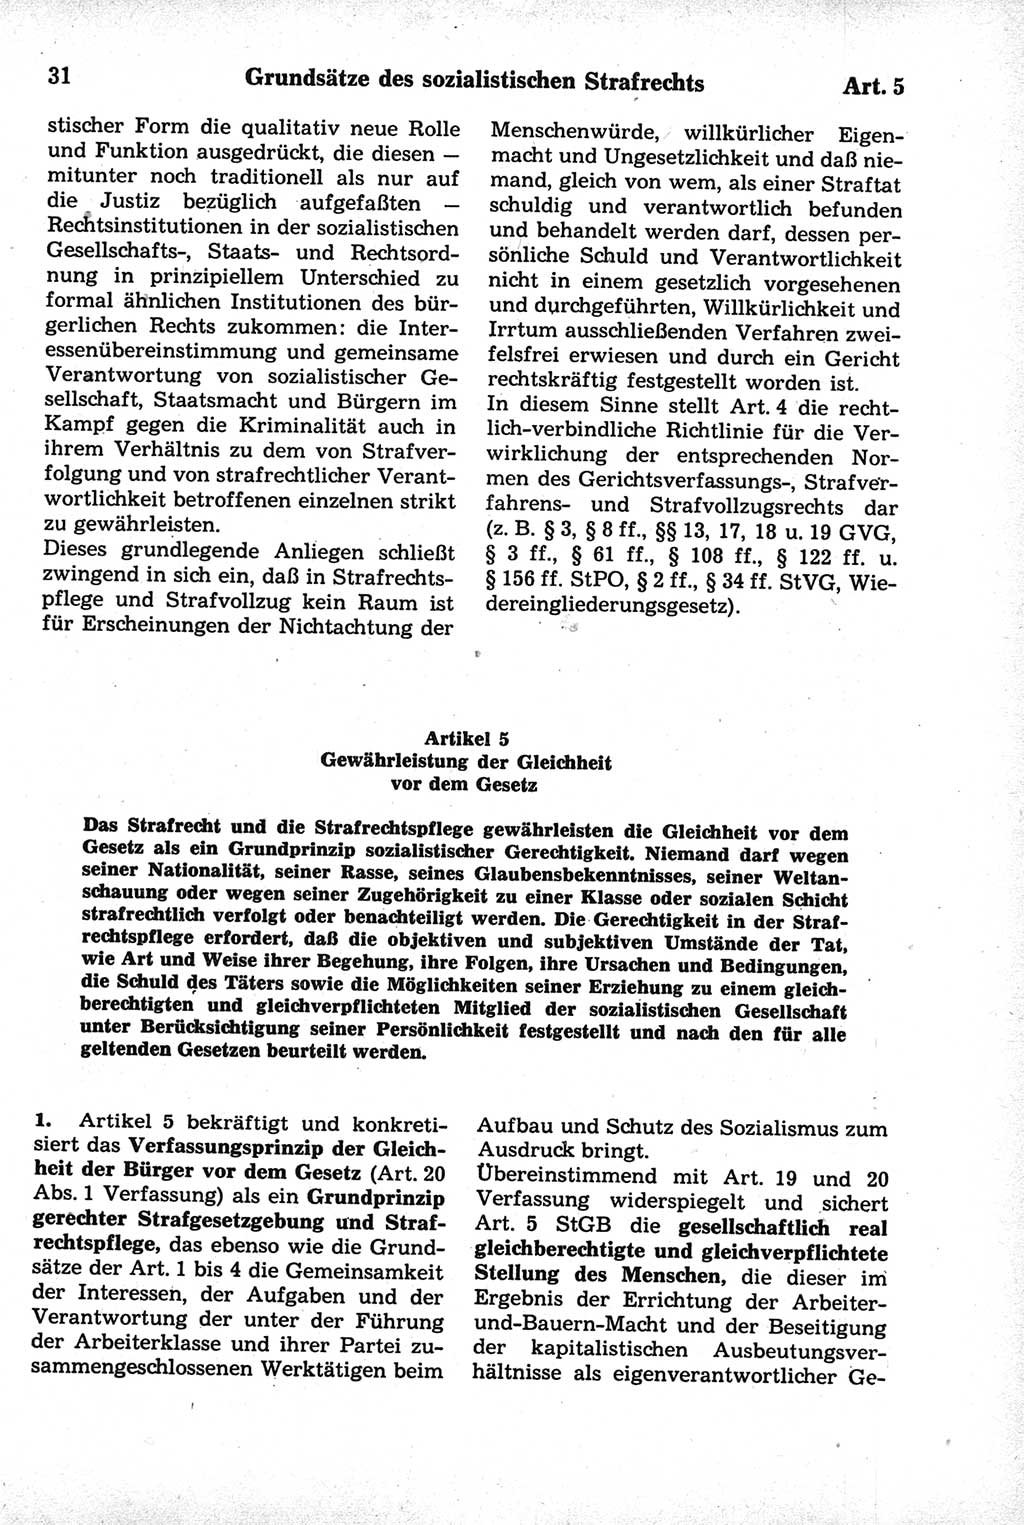 Strafrecht der Deutschen Demokratischen Republik (DDR), Kommentar zum Strafgesetzbuch (StGB) 1981, Seite 31 (Strafr. DDR Komm. StGB 1981, S. 31)